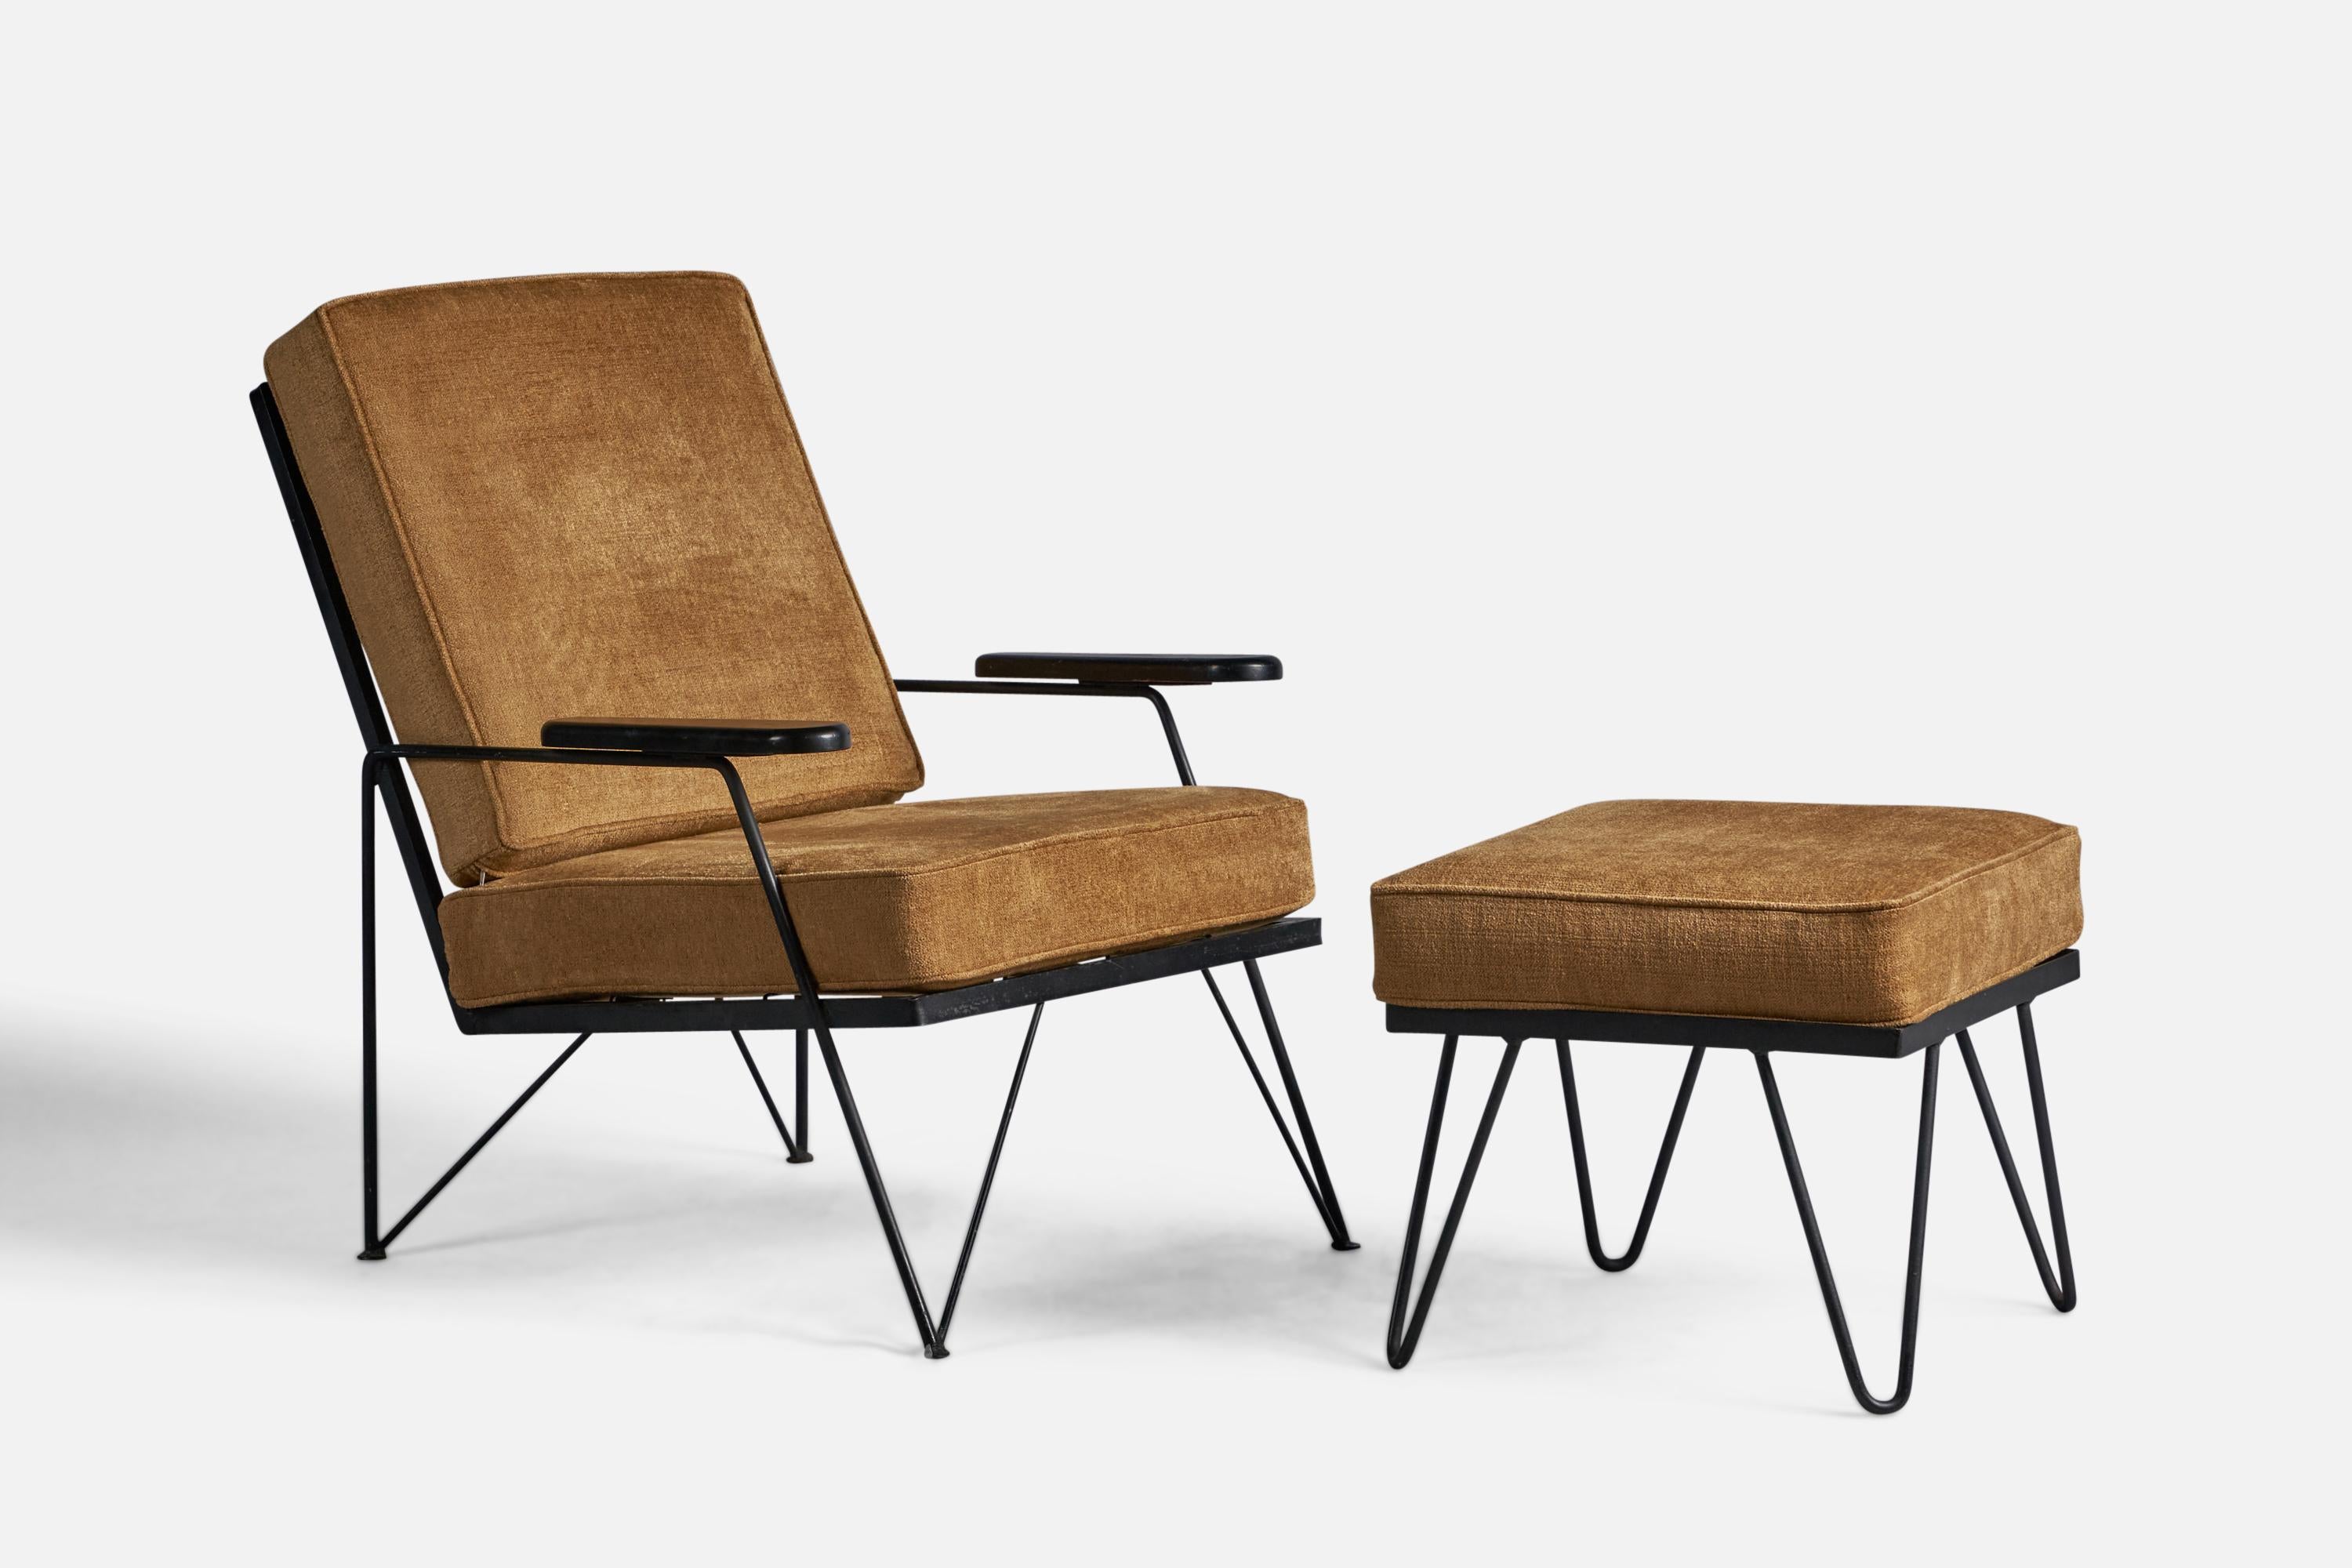 Sessel aus schwarz lackiertem Holz und Metall und beigem Stoff mit Ottomane, entworfen und hergestellt in den USA, 1950er Jahre.

16,75